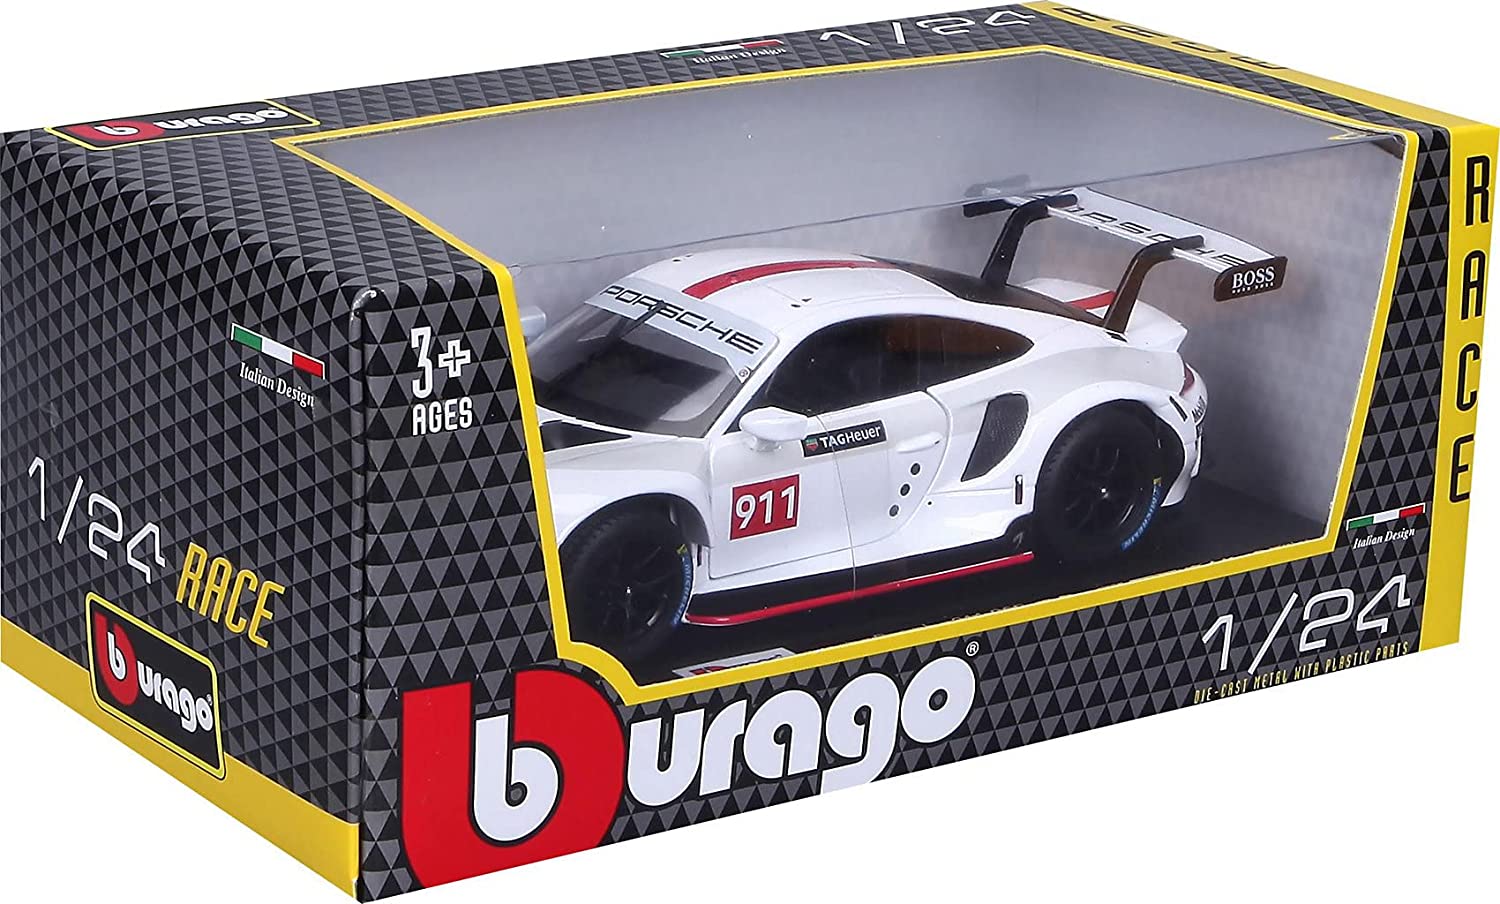 Burago-BURAGO 1/24 PORSCHE 911 RSR RACE 18/28013(18/28013)